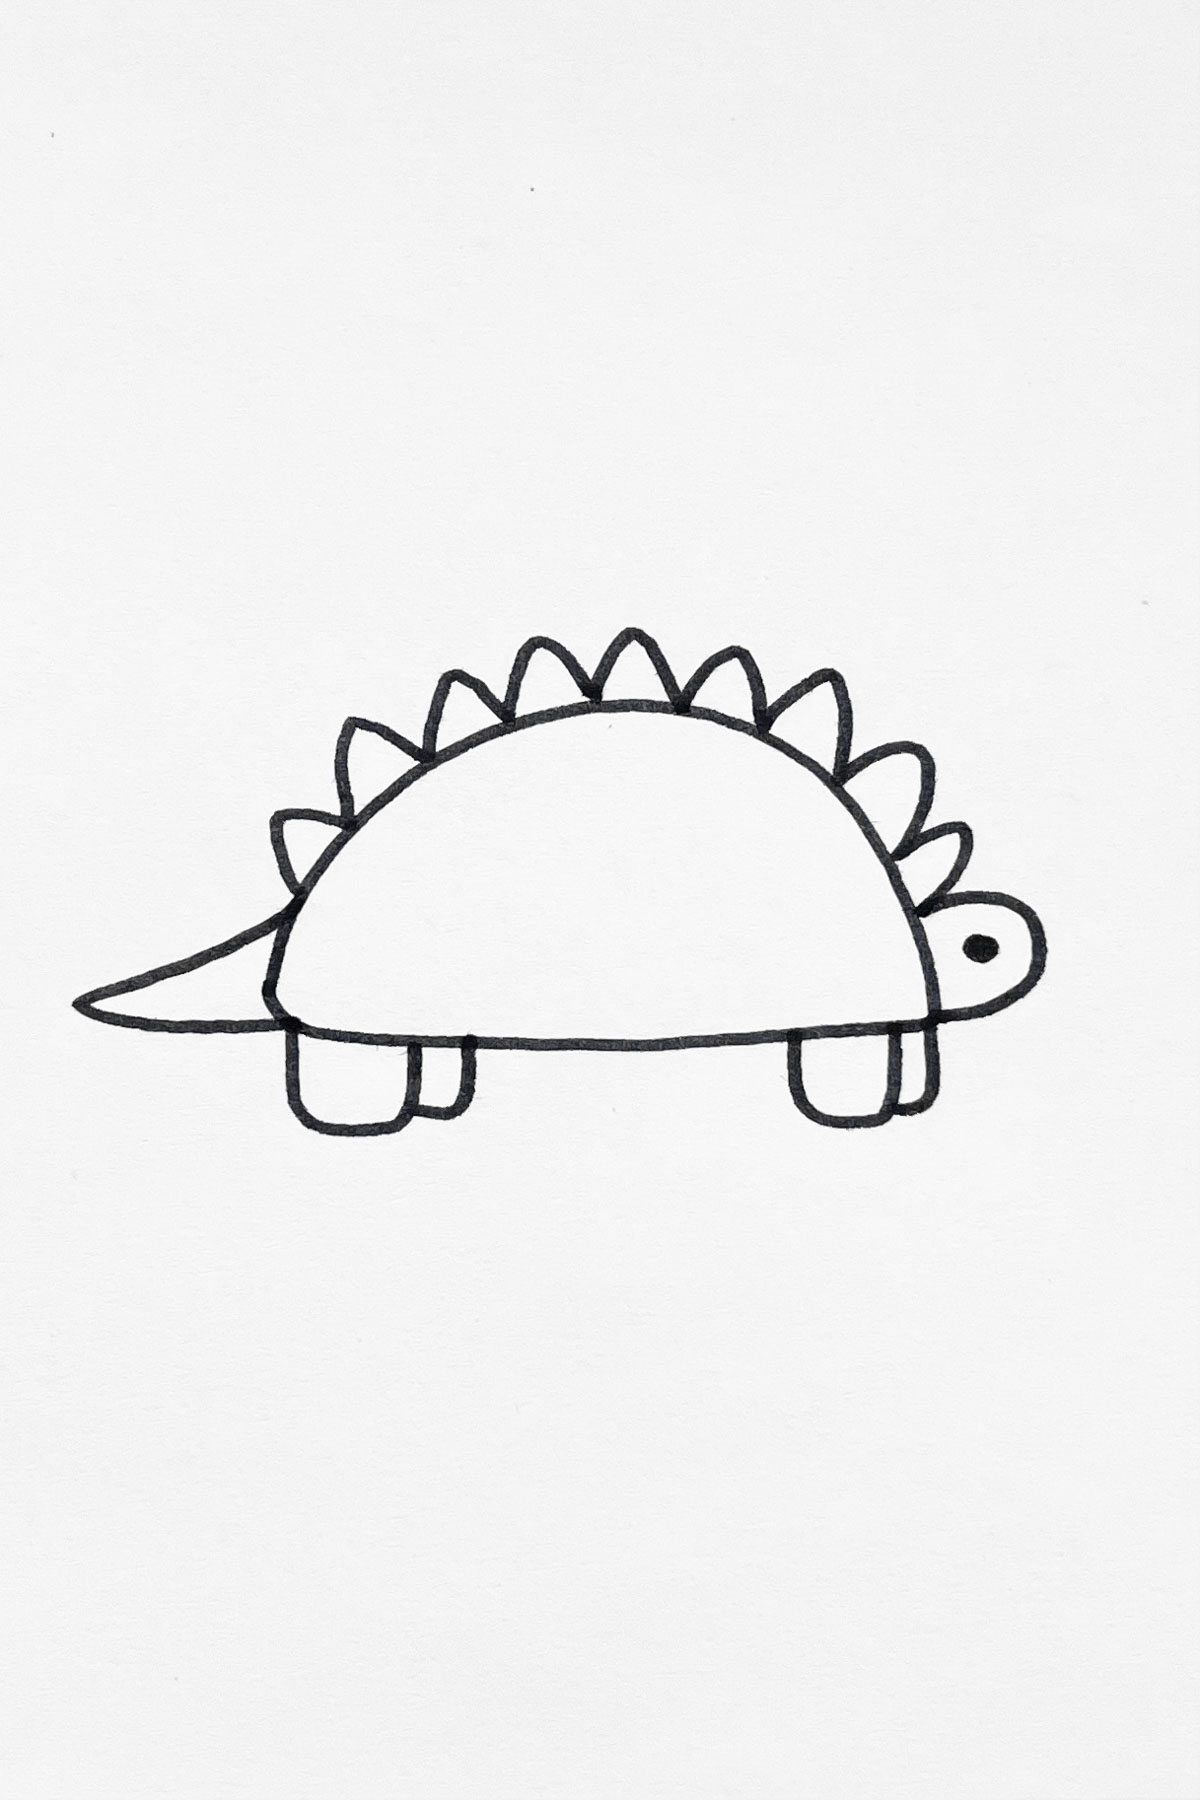 Short Dinosaur drawing